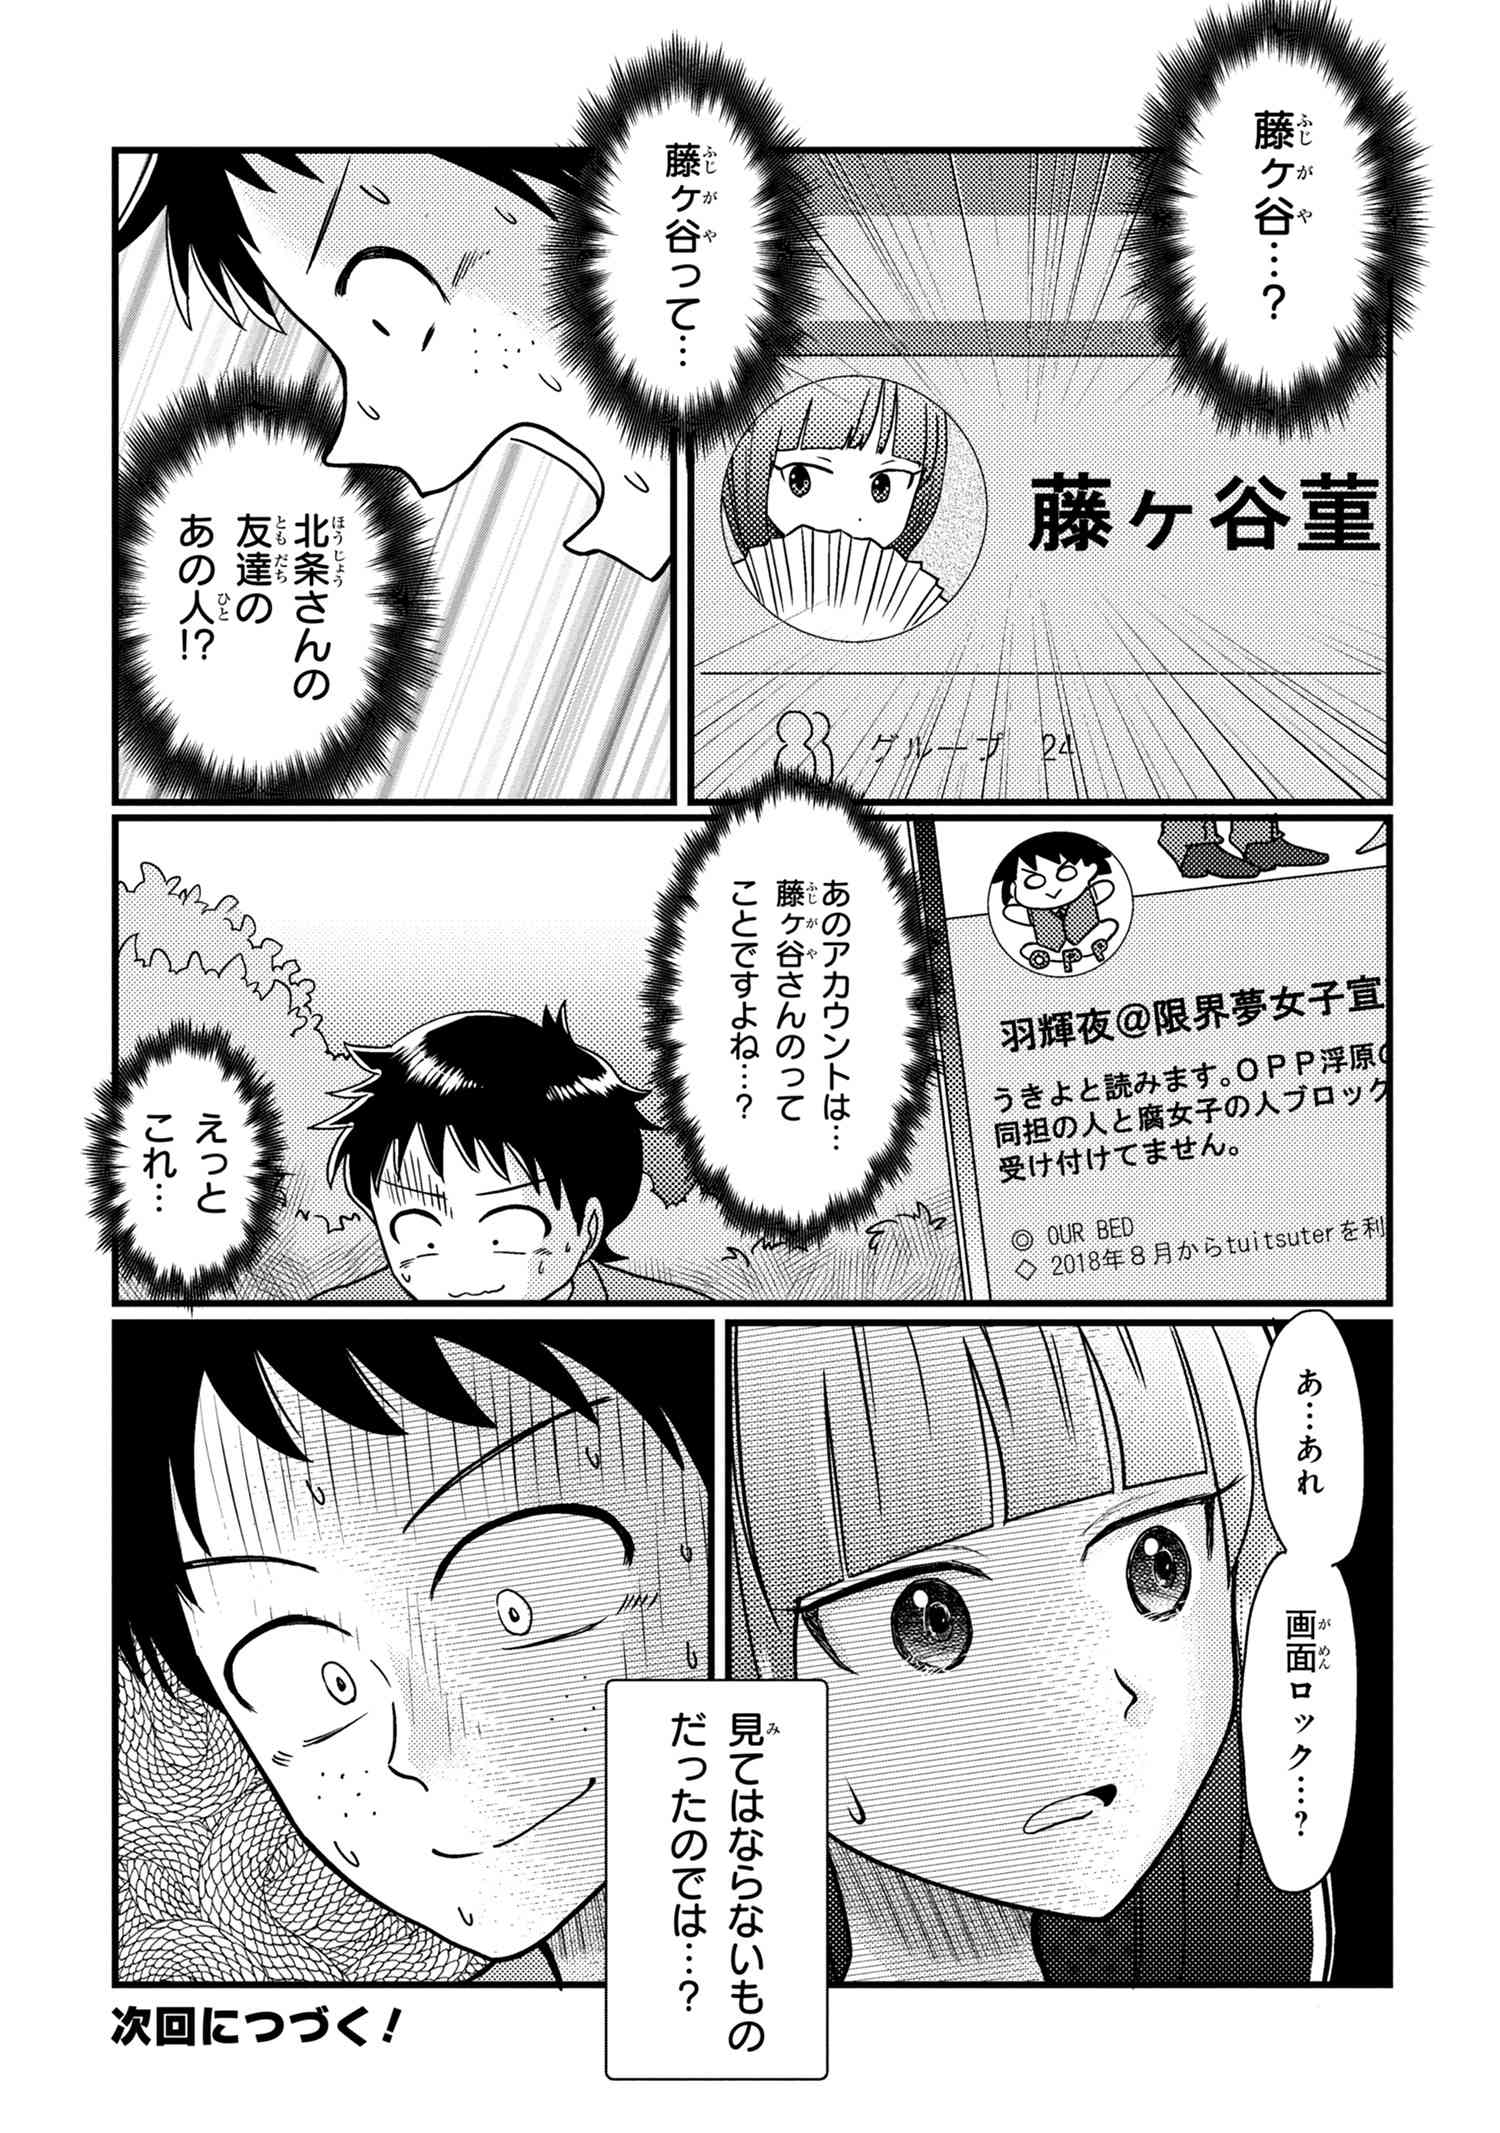 Houjou Urara no renai shousetsu o kaki nasai! - Chapter 10 - Page 5